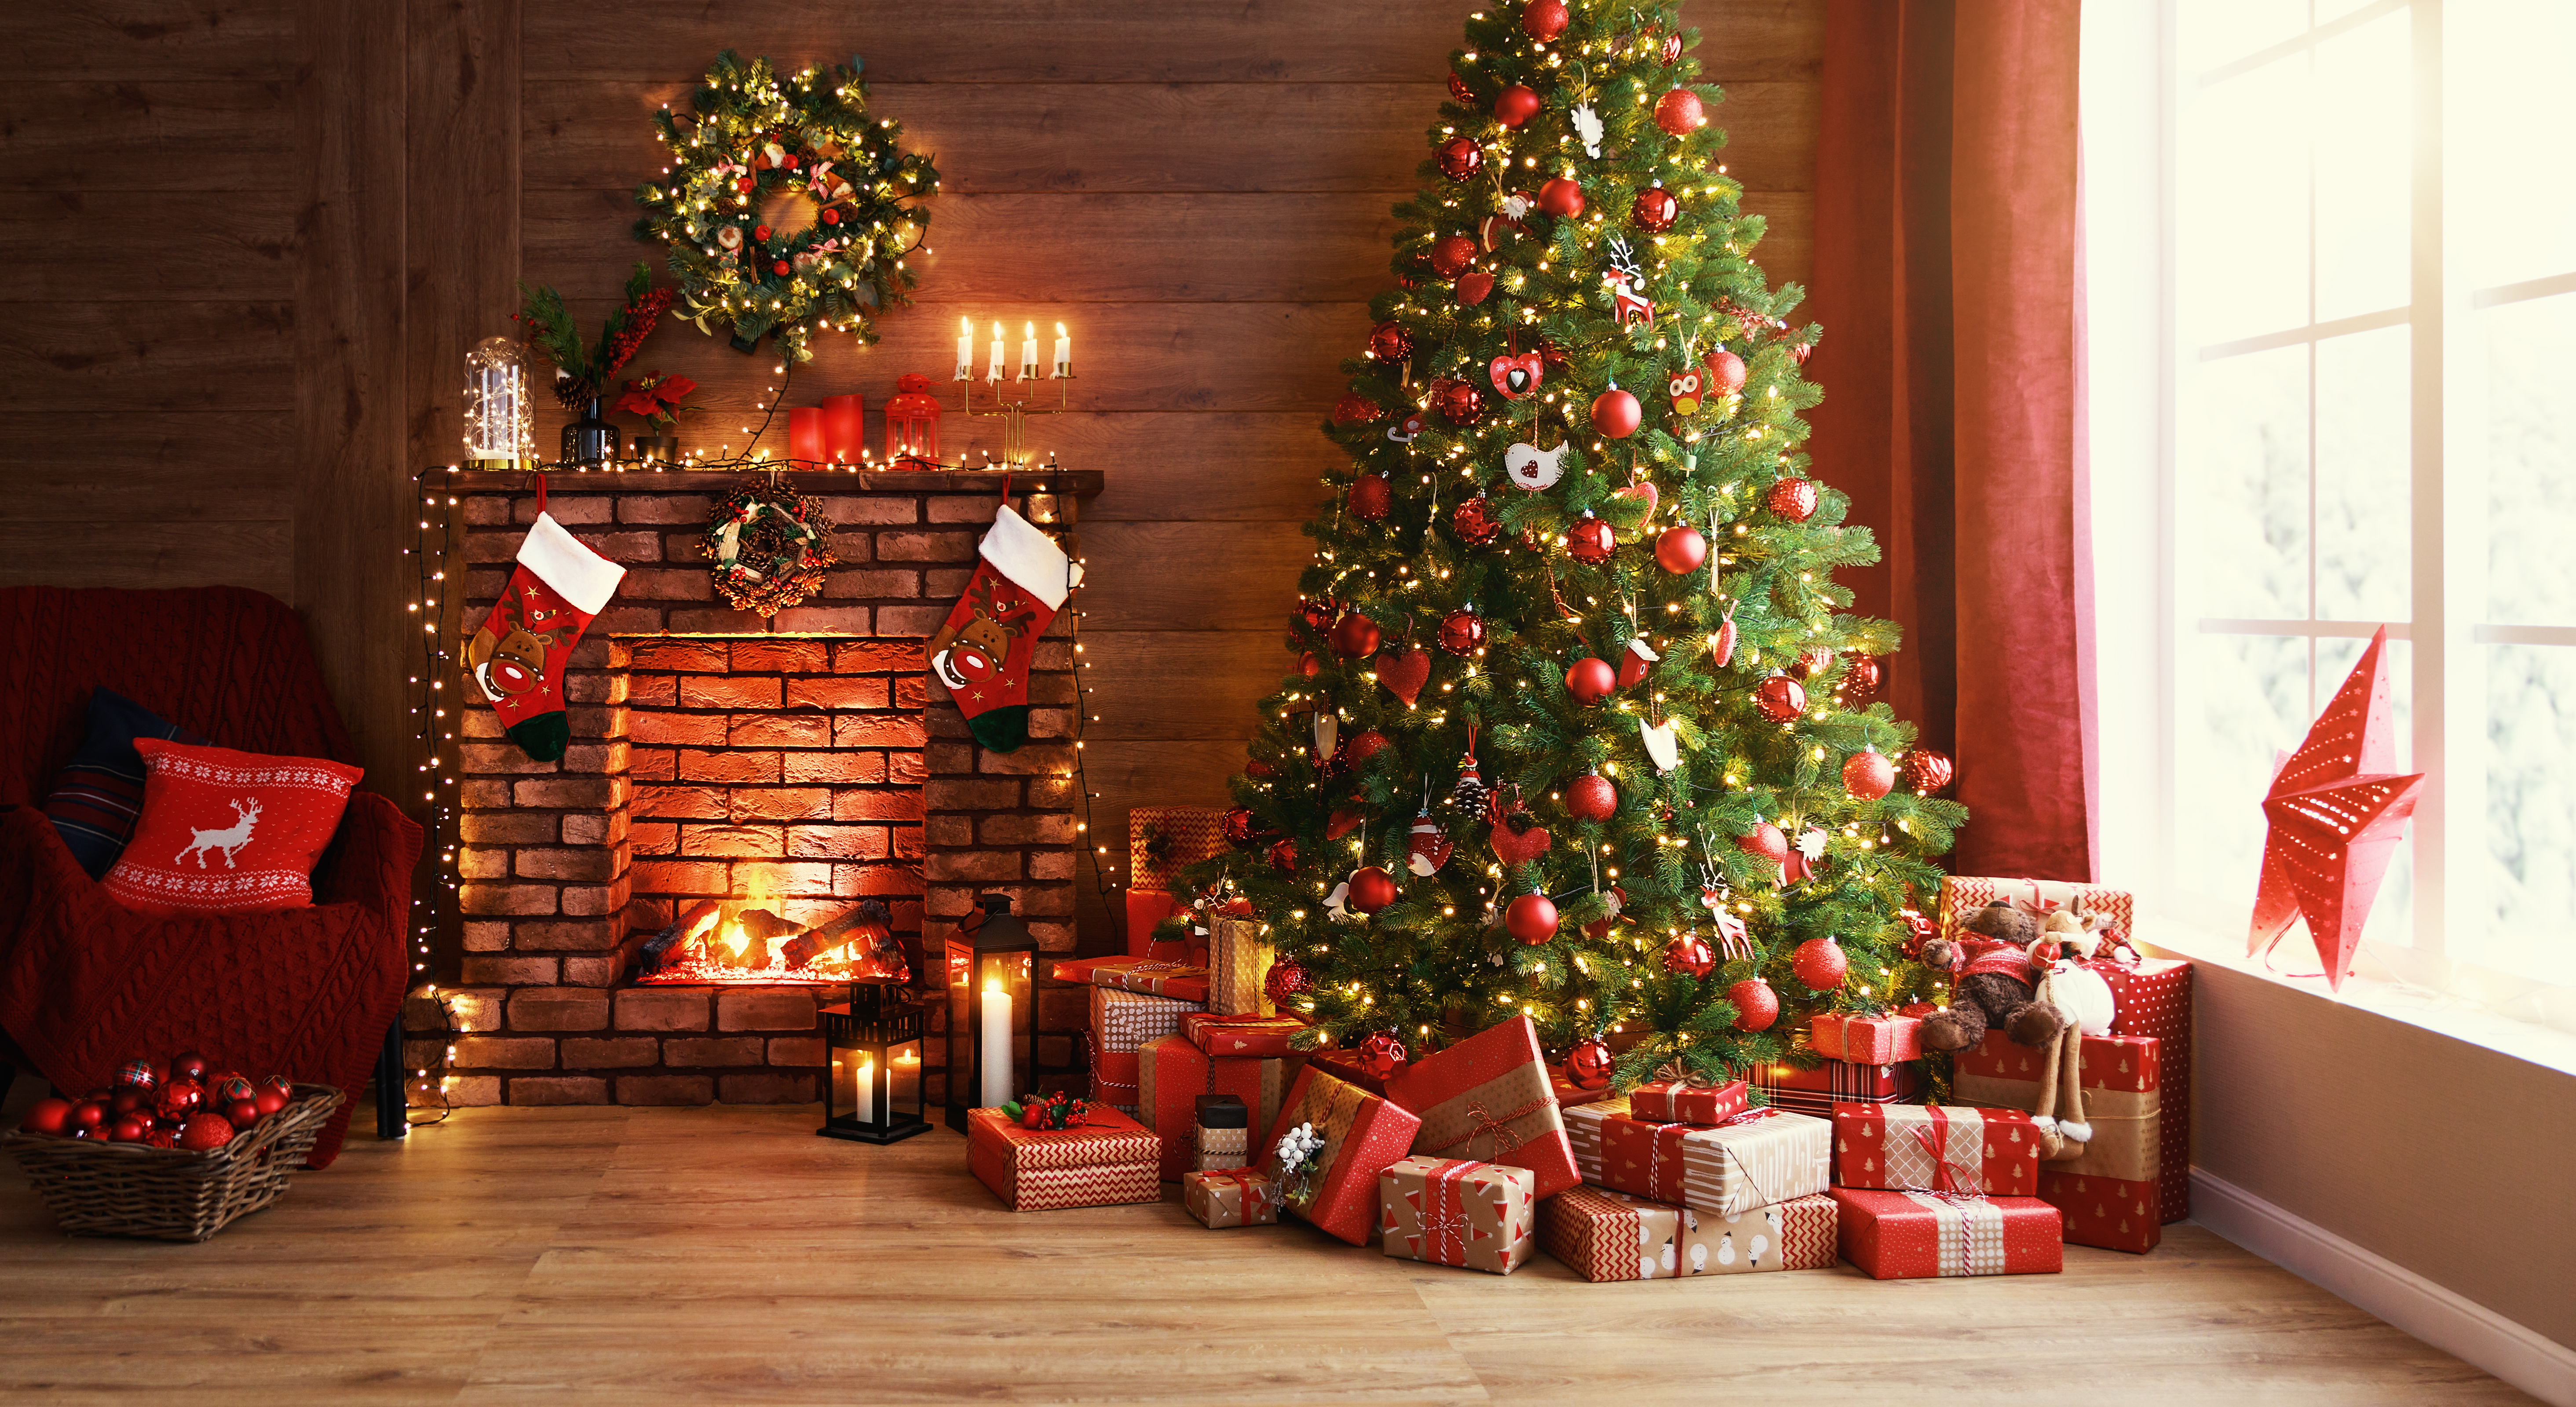 Cajas de regalo bajo un árbol de Navidad. | Foto: Shutterstock